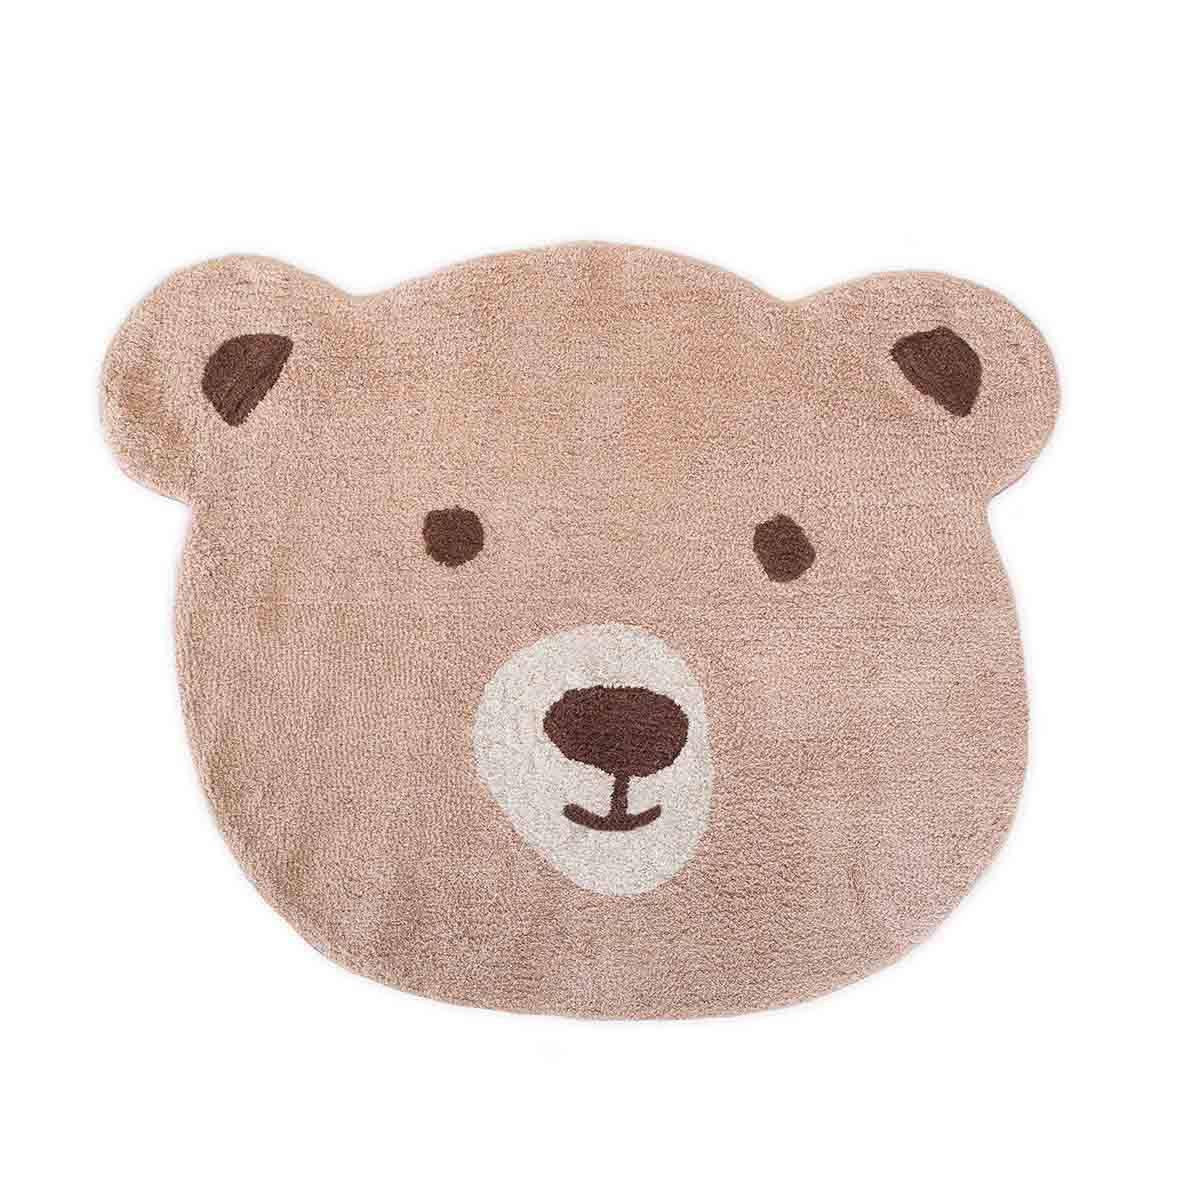 Kleed je kinderkamer warm en stijlvol aan met het KidsDepot beer beige vloerkleed. Het speelkleed is 100 x 125 cm groot is gemaakt van 100% katoen. Dit maakt het tapijt comfortabel om op te zitten en te spelen. VanZus